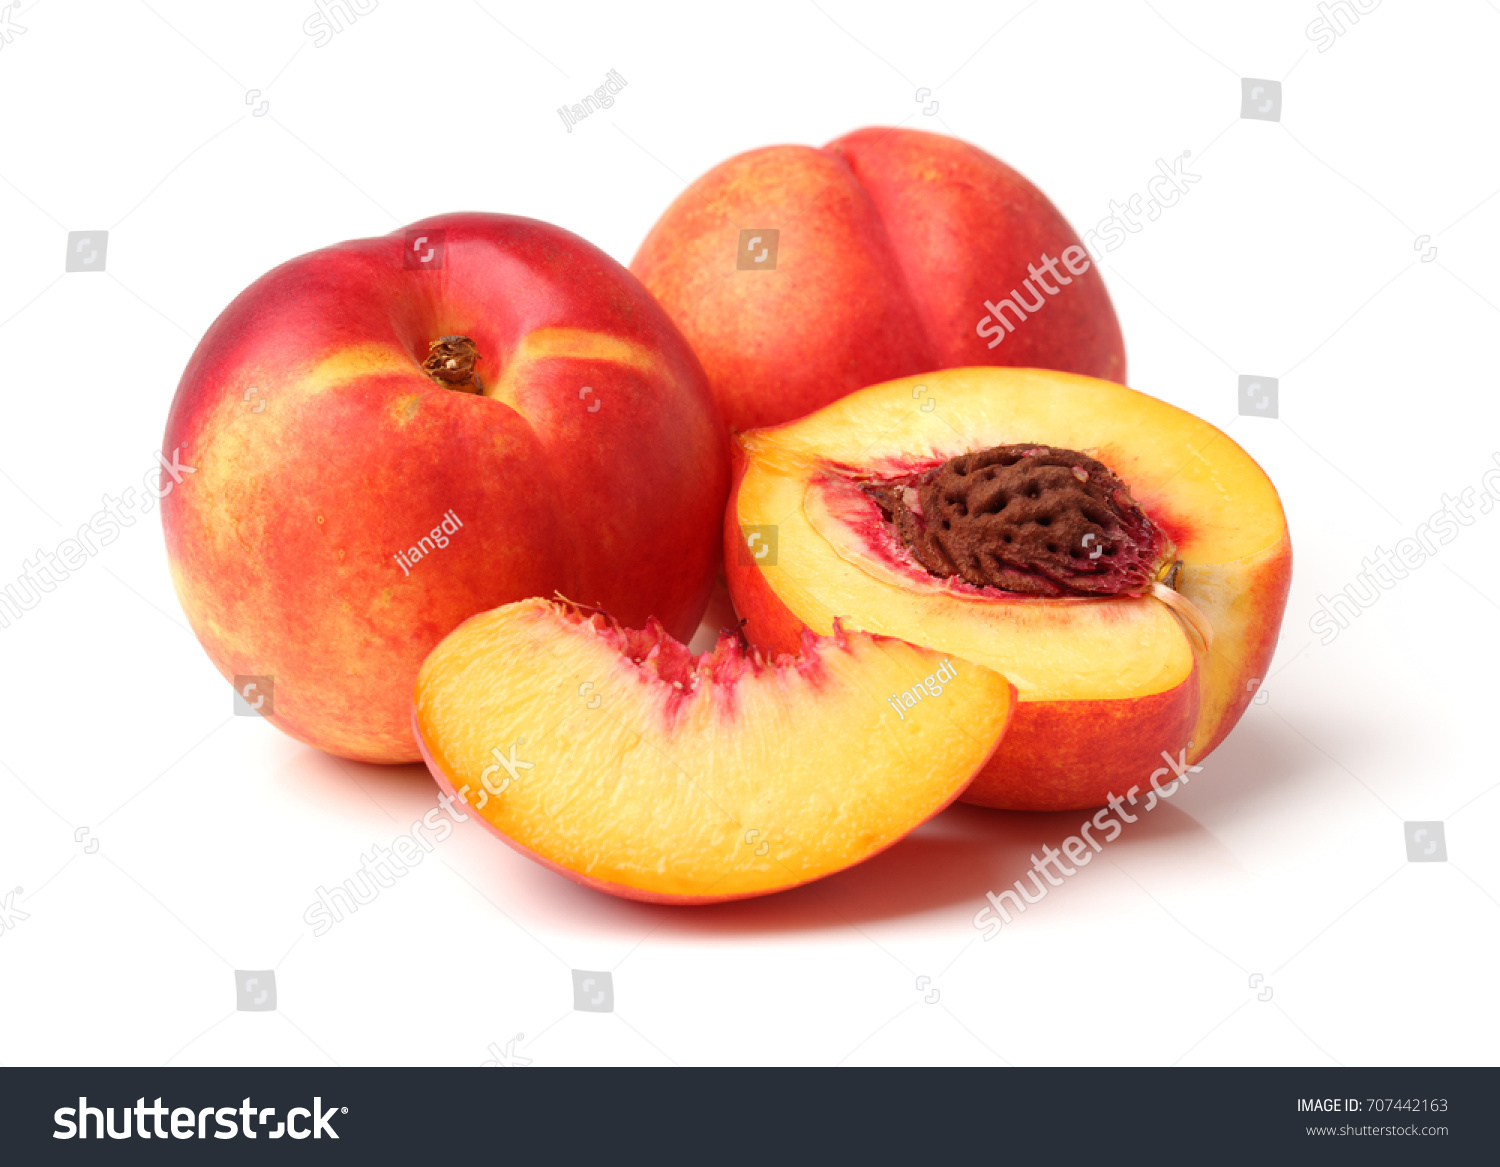 Nectarine fruit isolated on white background #707442163